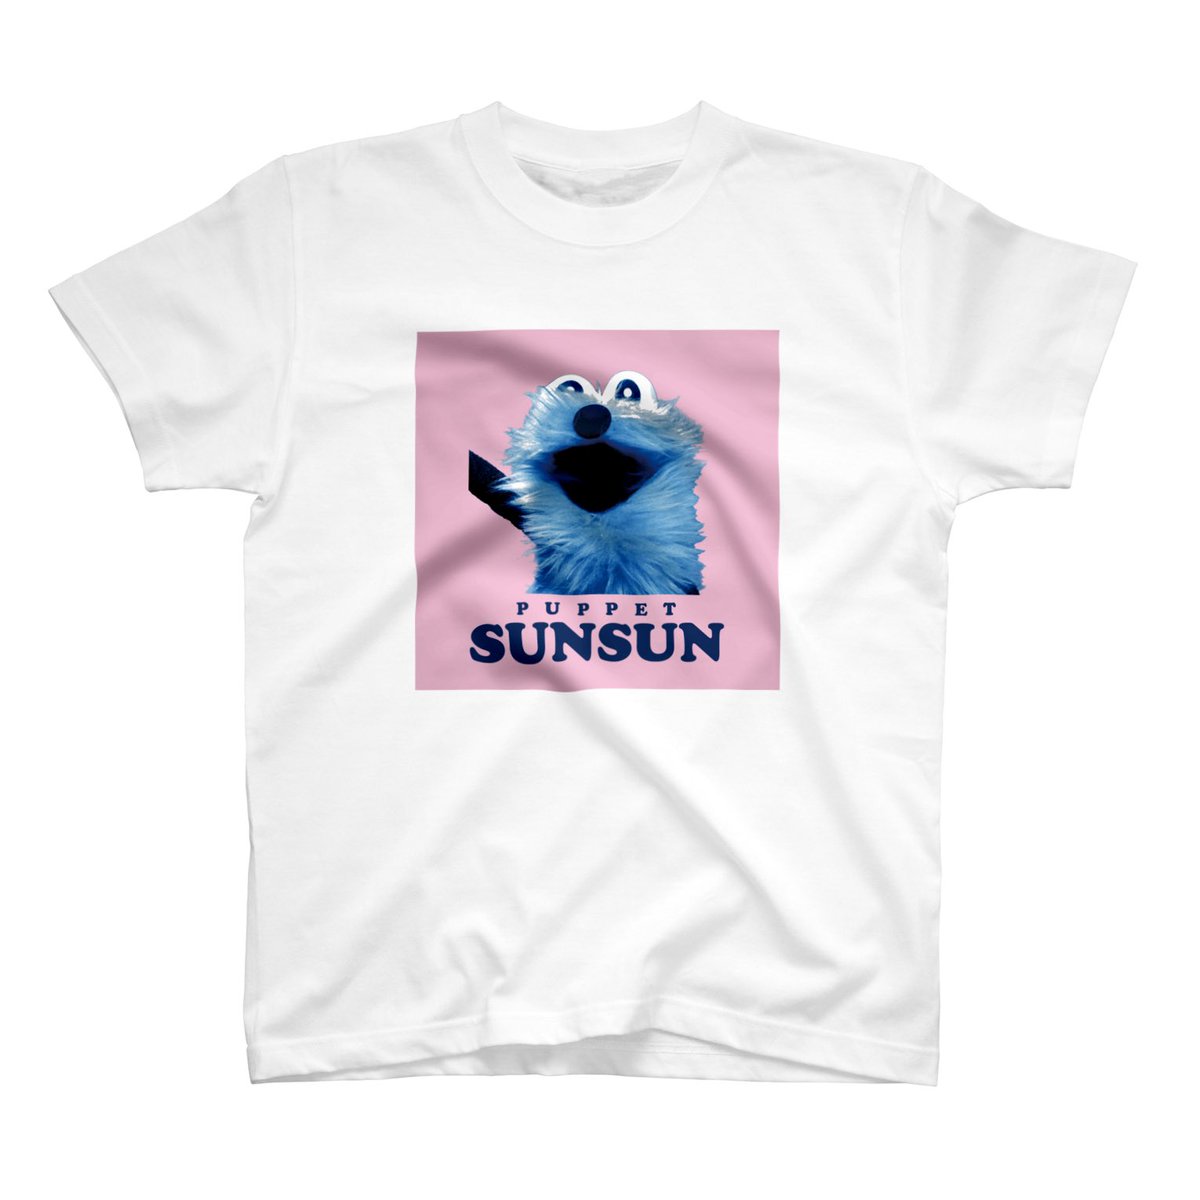 「SUZURIさんでTシャツのセールがはじまりましたっ!
5/20 12:00～5」|パペットスンスンのイラスト